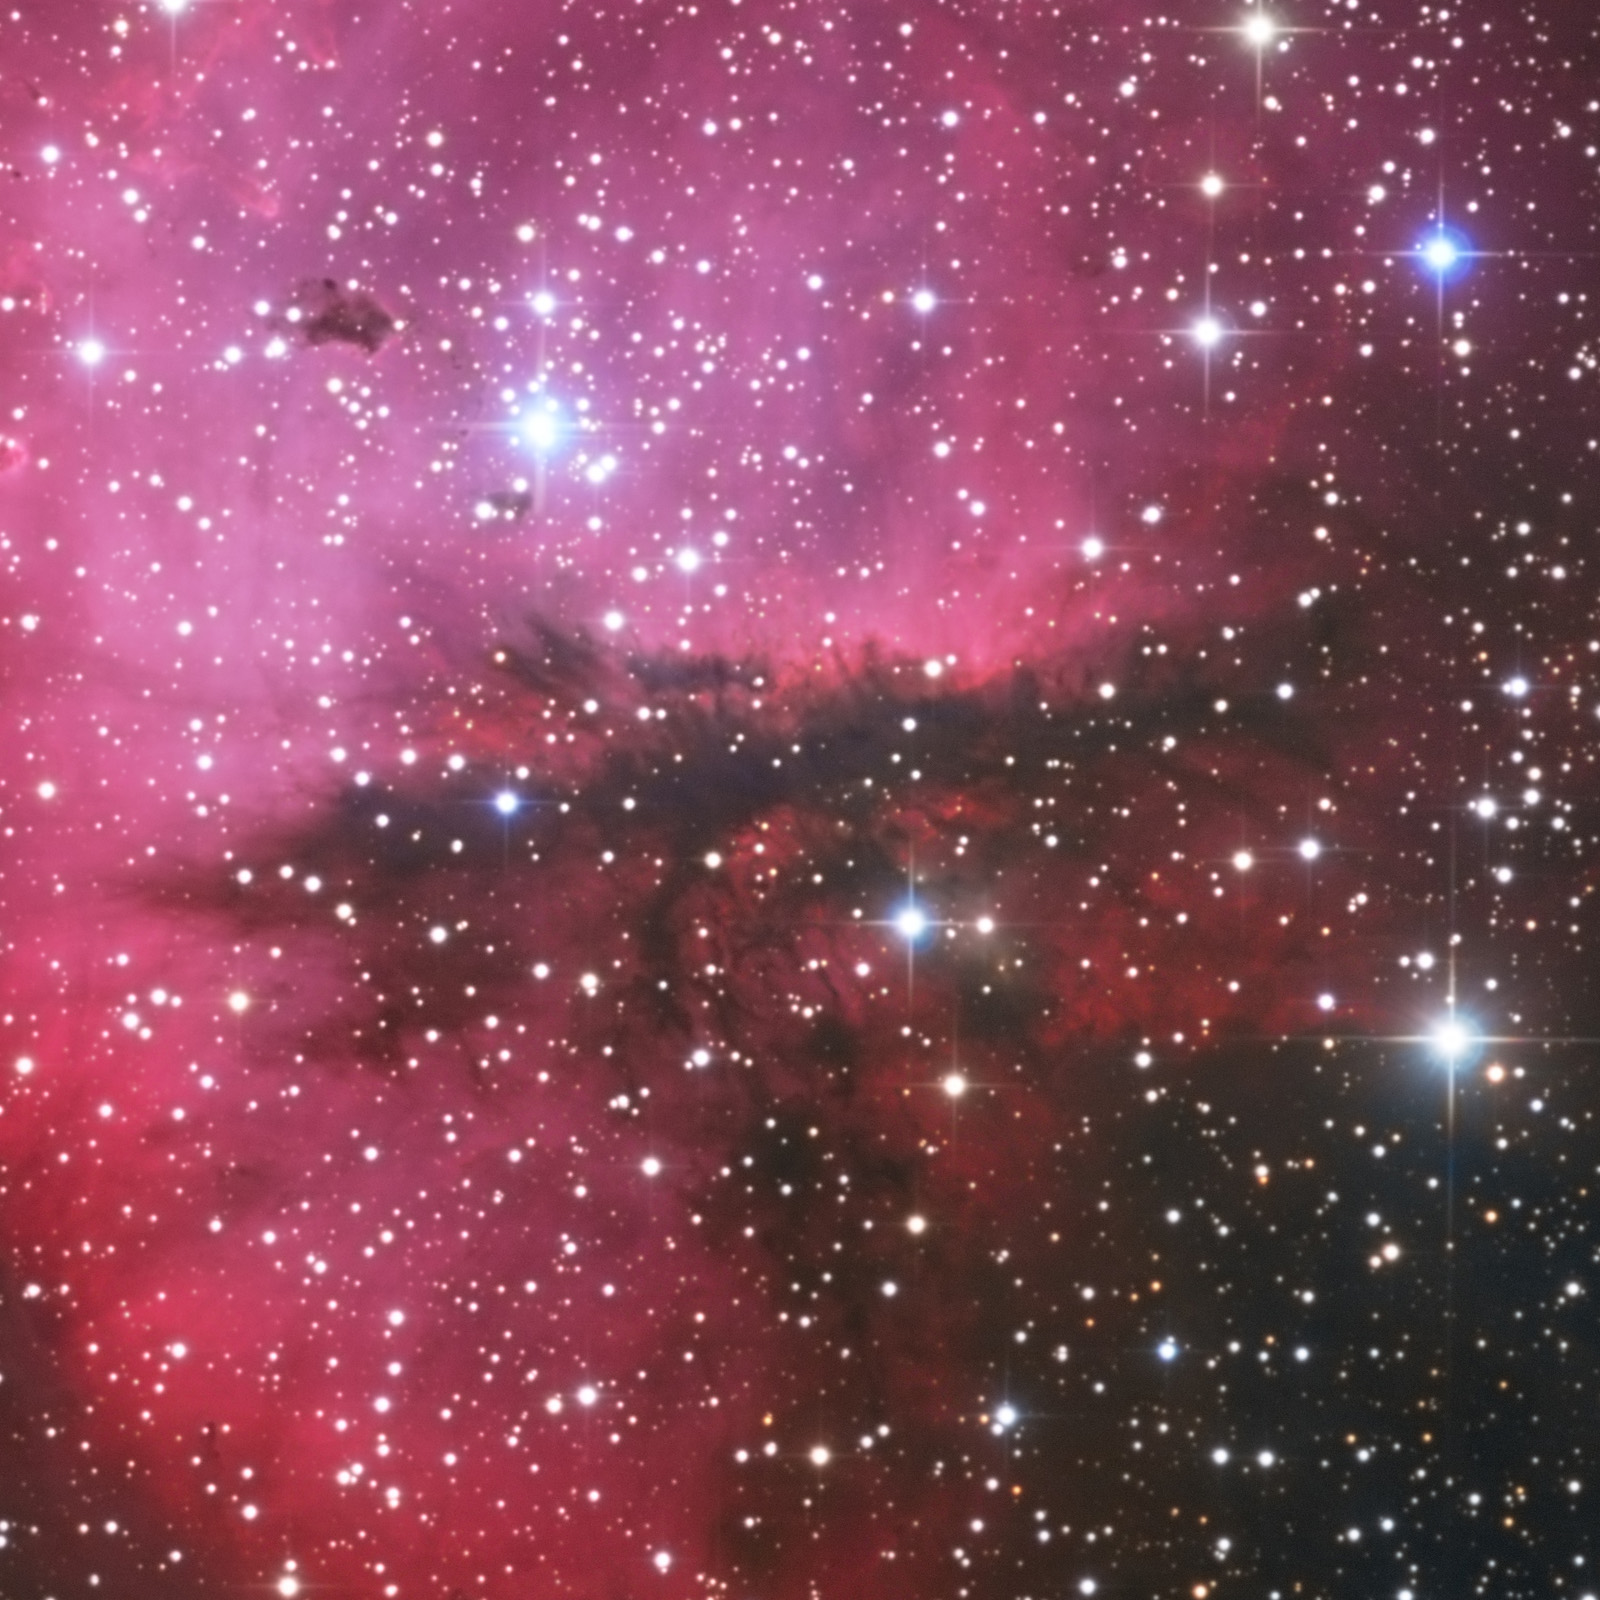 NGC281_Pacman_crop_1600px_q10.jpg